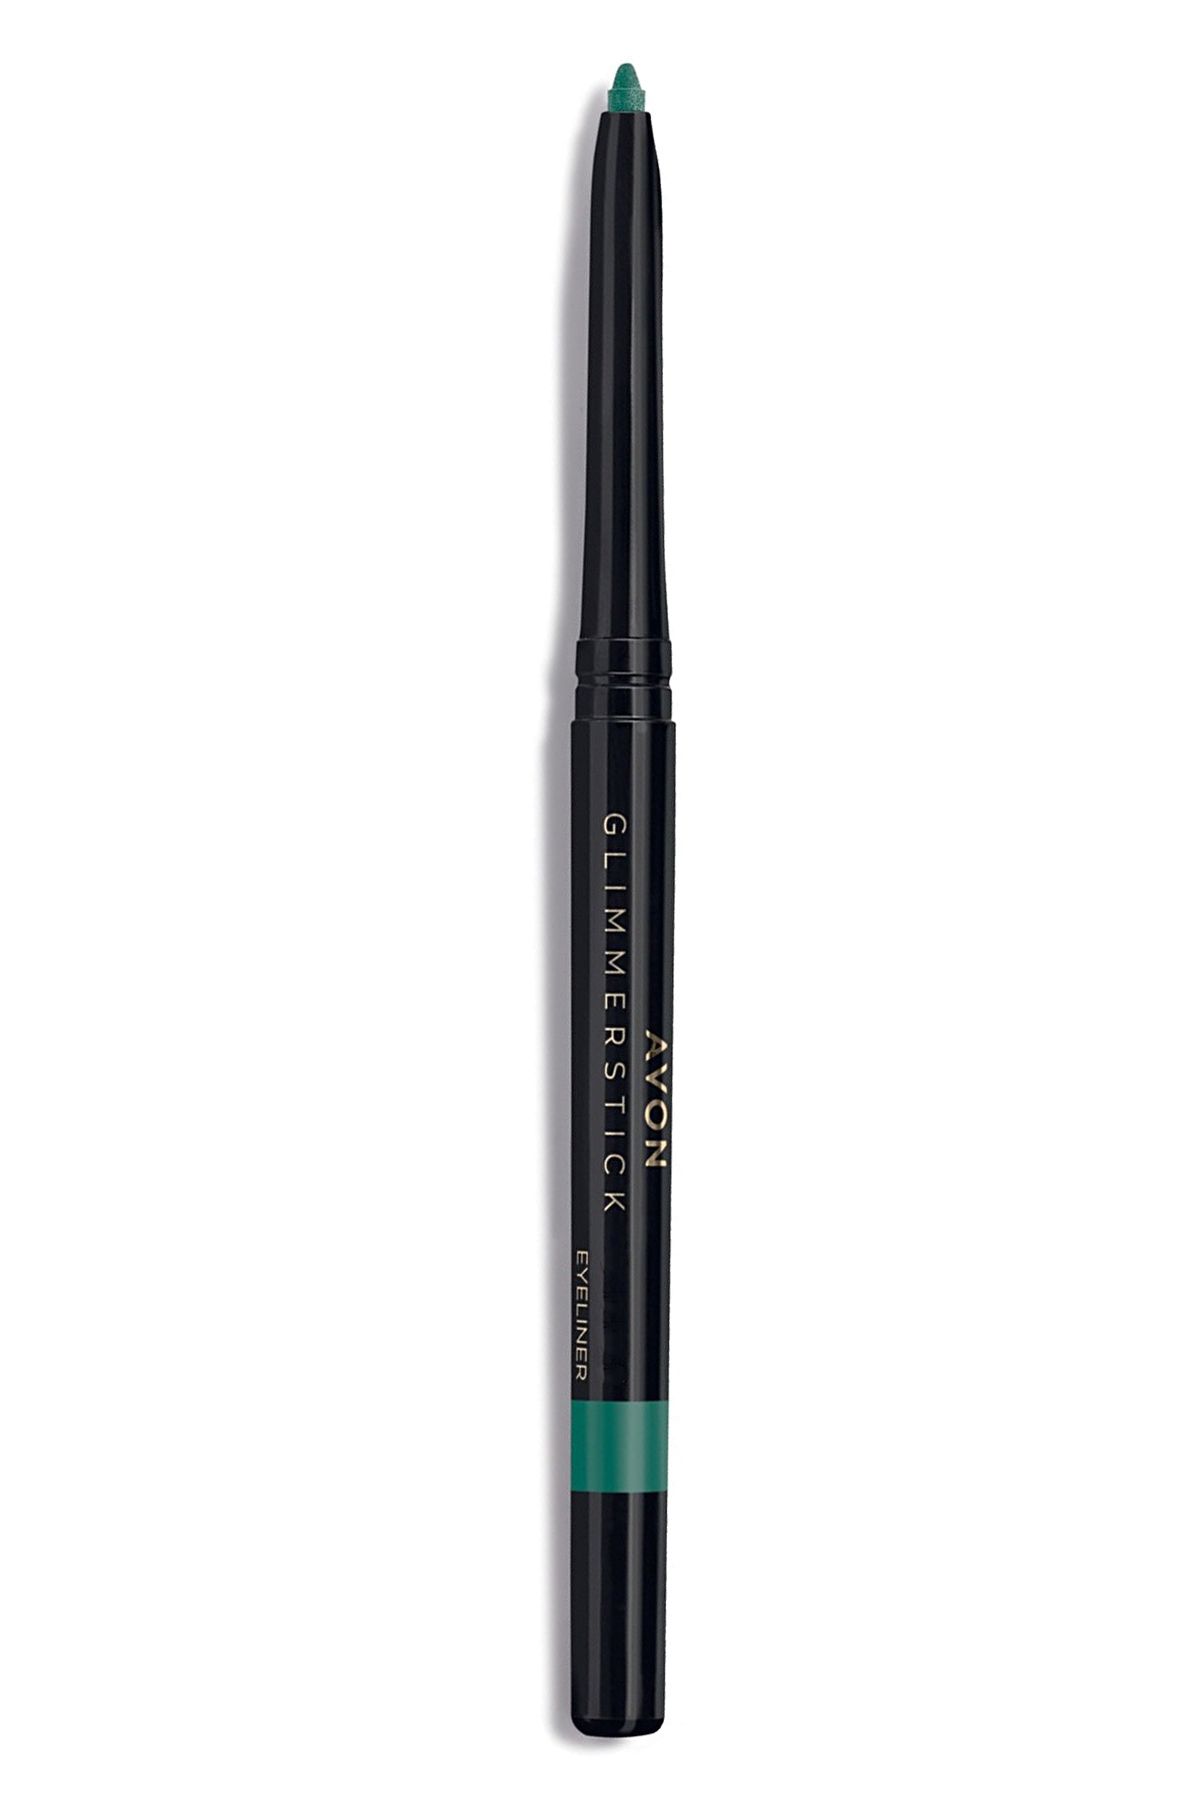 Avon Glimmerstick Asansörlü Göz Kalemi Pırıltılı - Jade Metallic